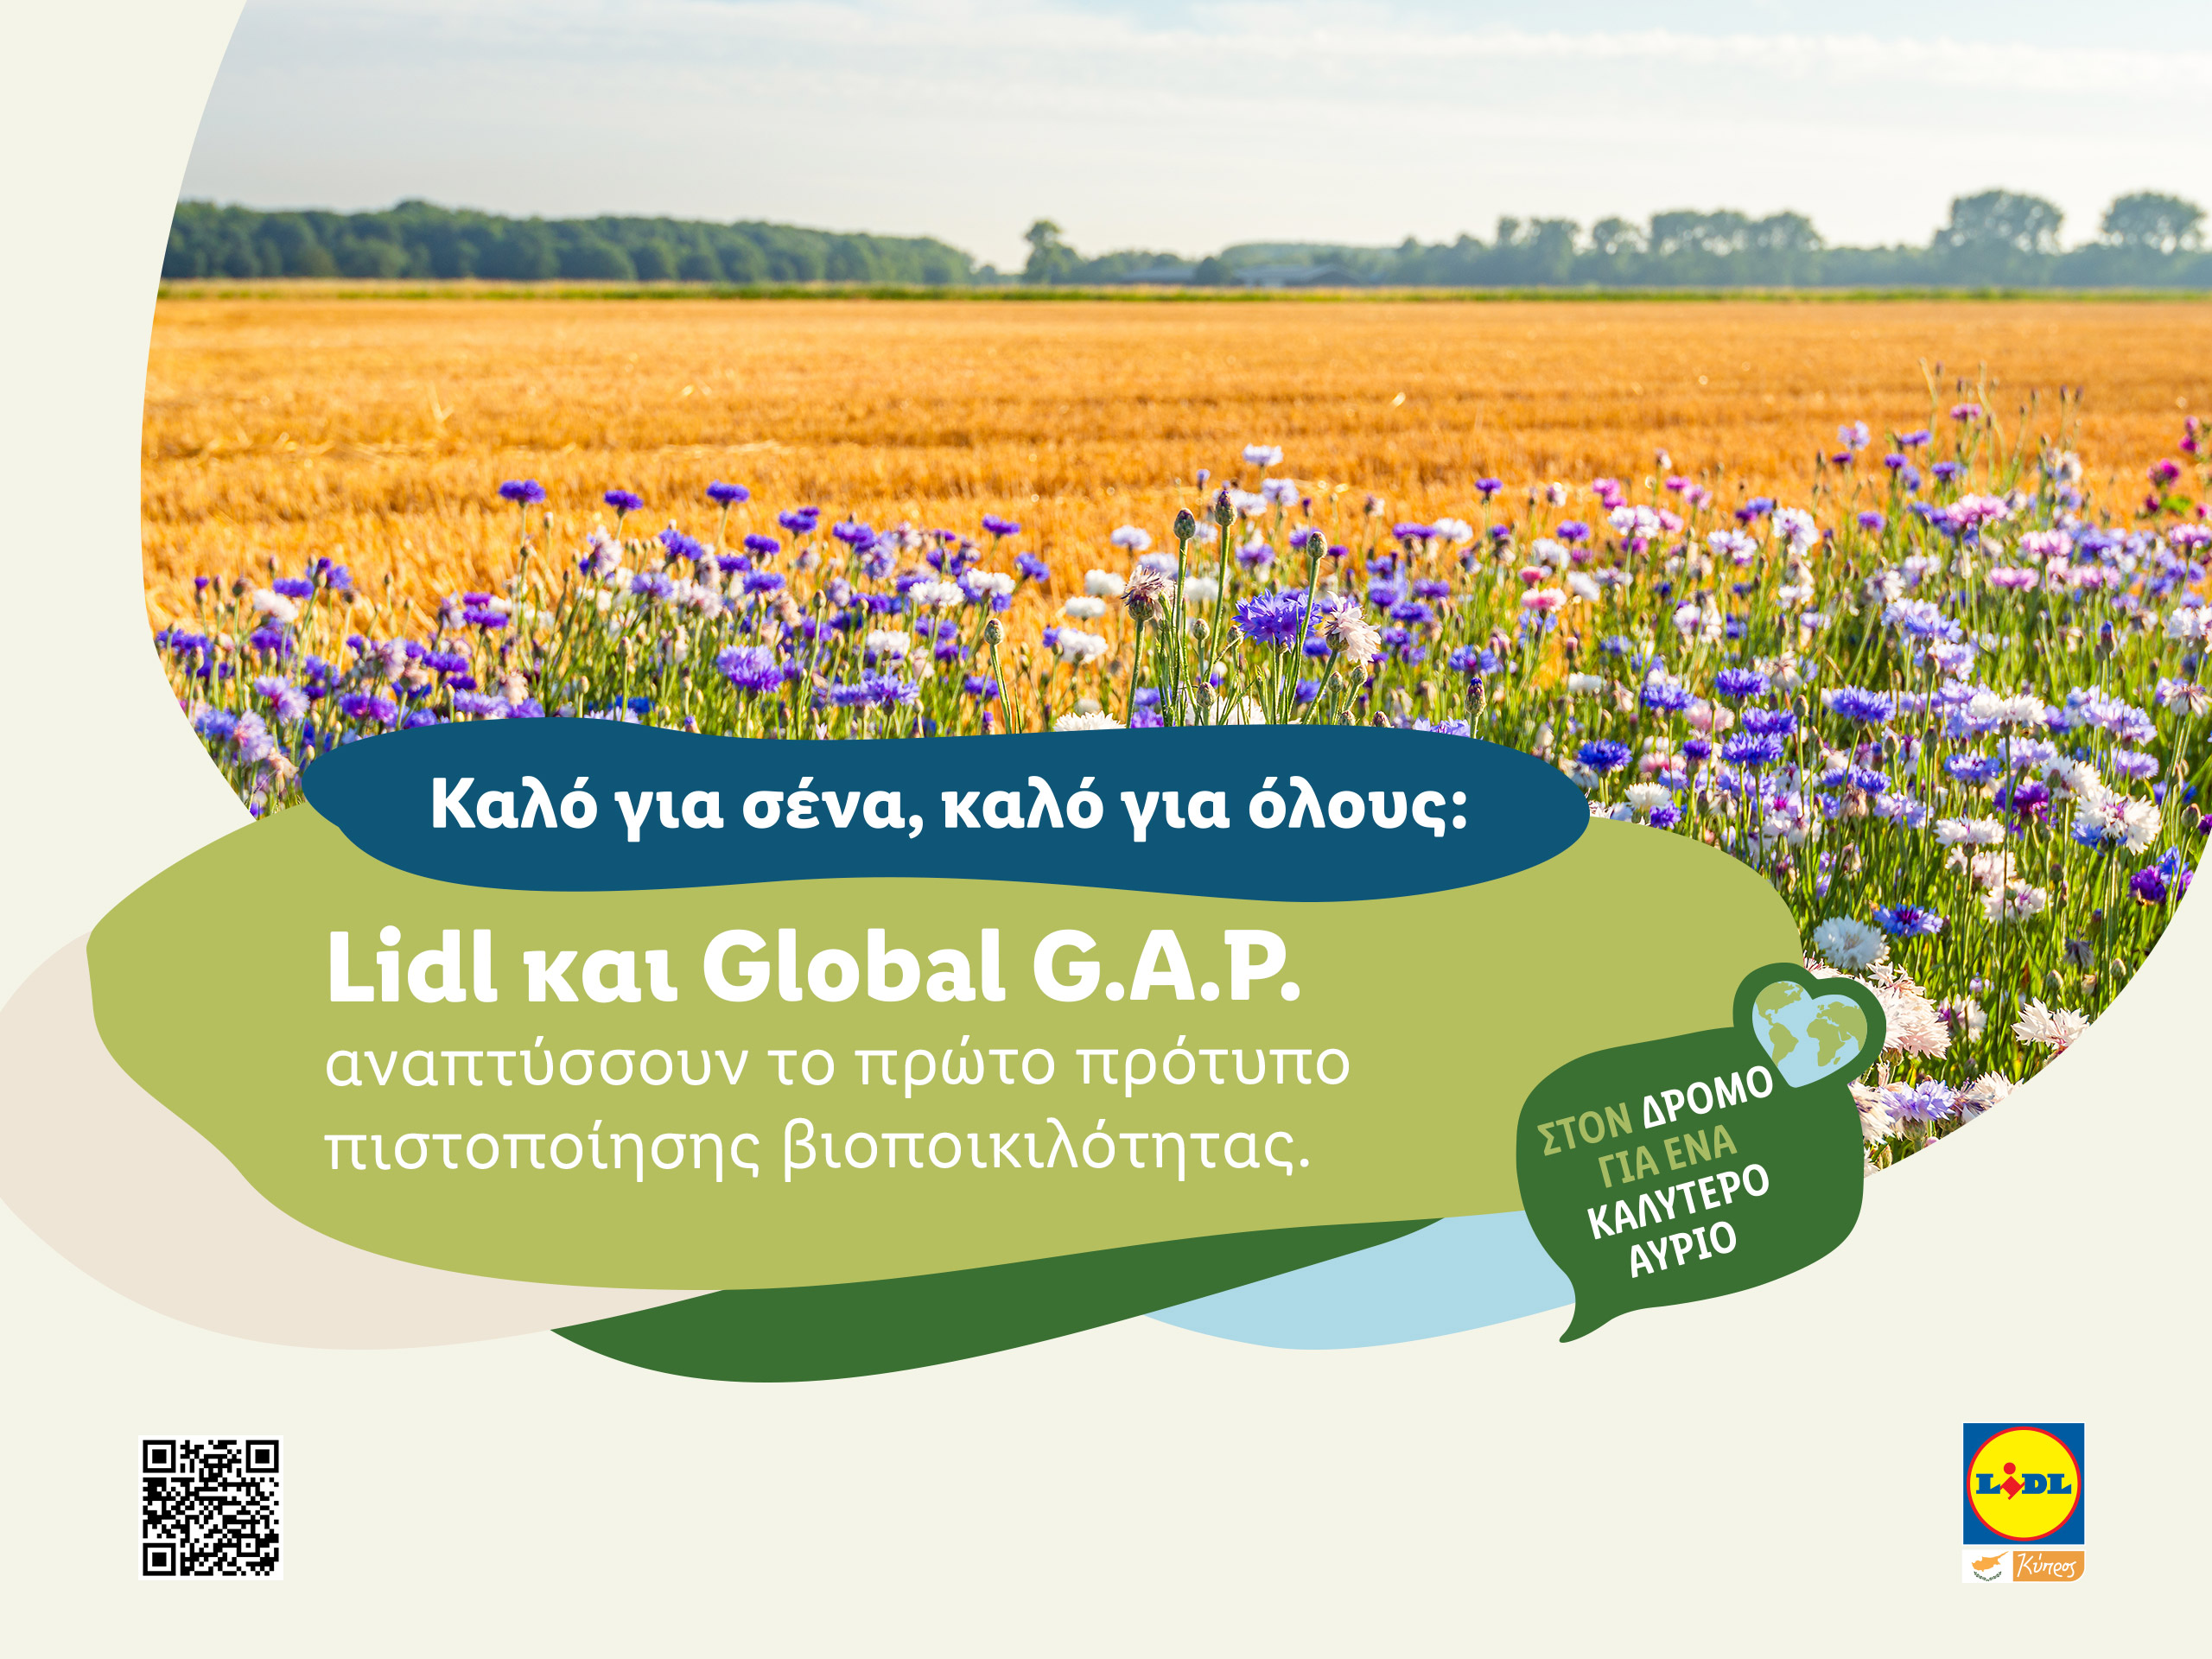 Lidl και Global G.A.P. αναπτύσσουν το πρώτο πρότυπο πιστοποίησης βιοποικιλότητας